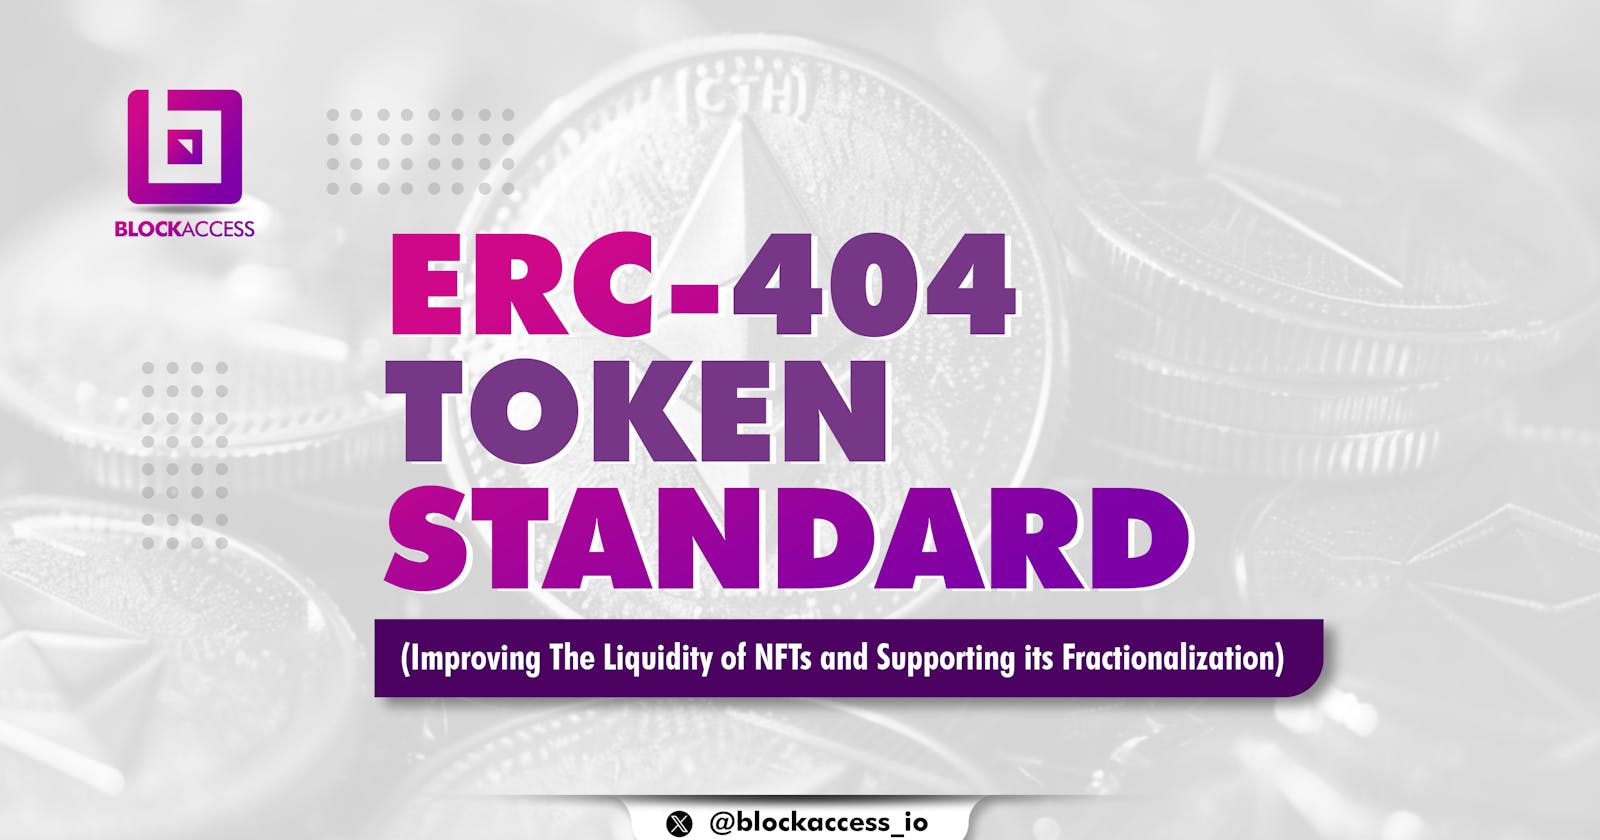 Erc 404 Token Standard